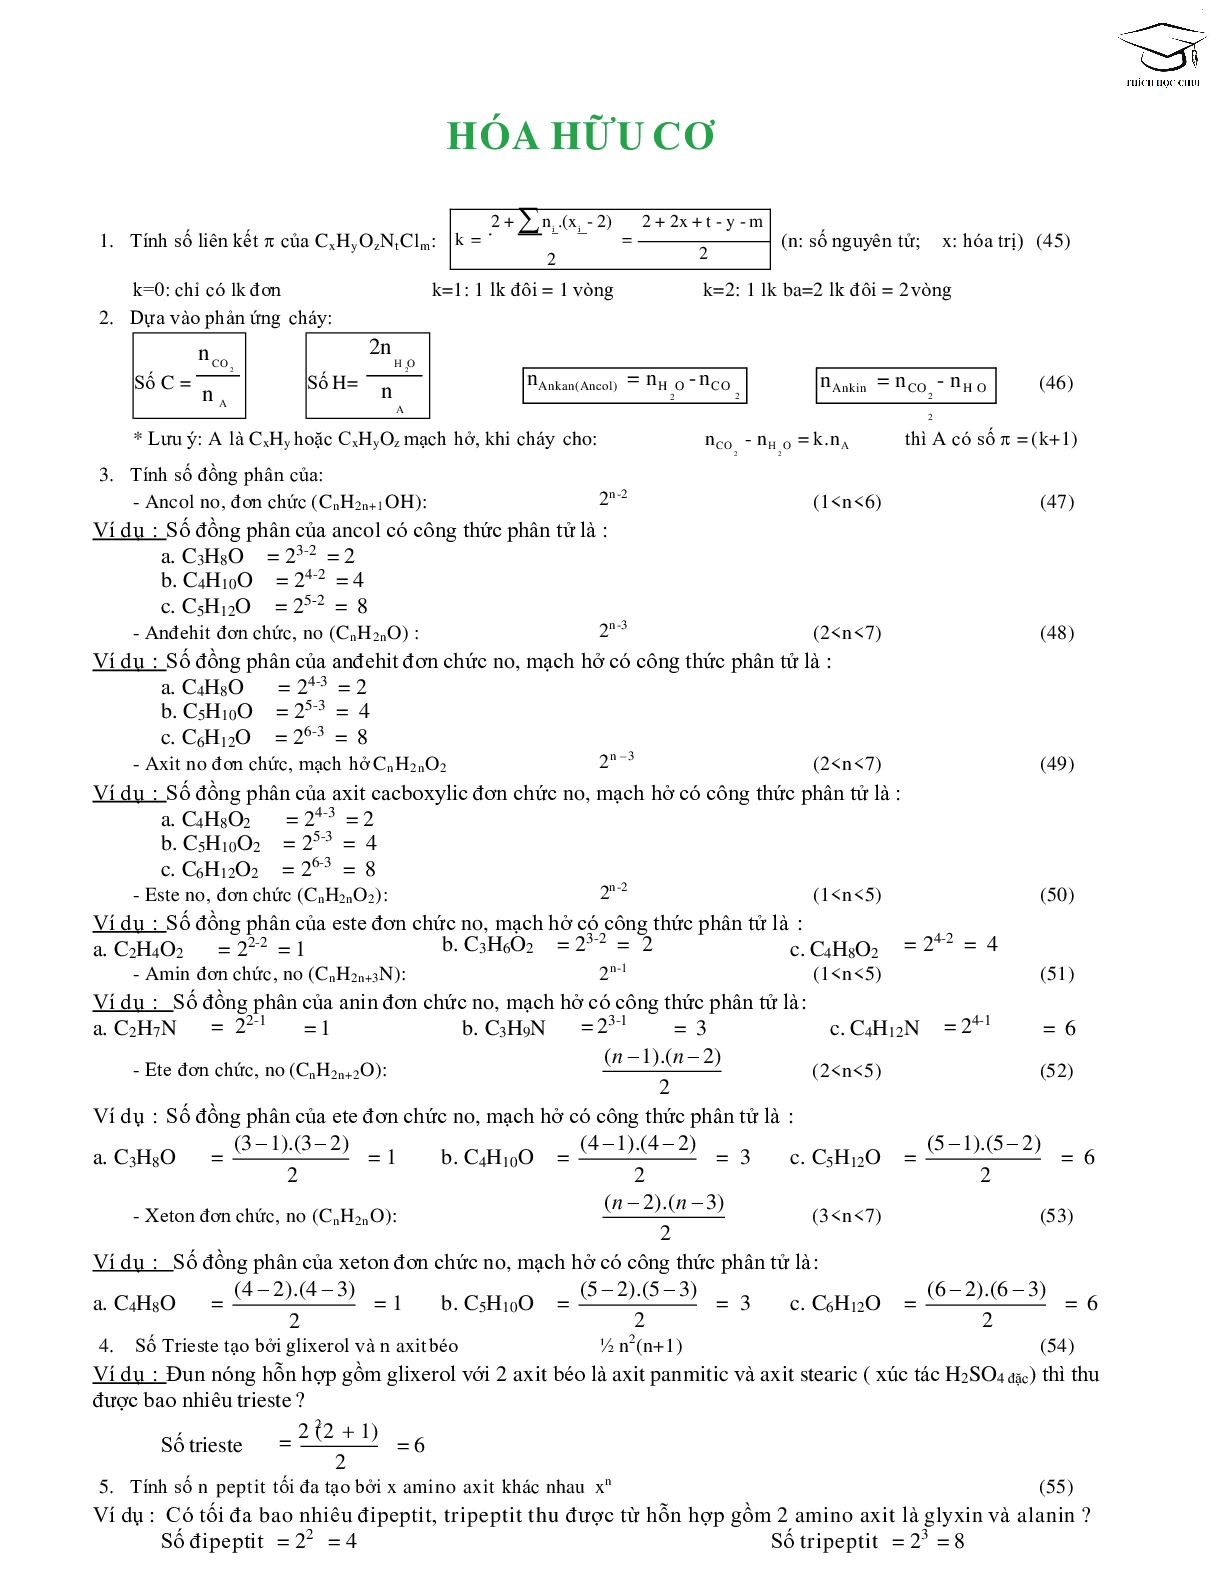 68 công thức giải nhanh bài tập trắc nghiệm môn hóa học lớp 12 (trang 7)